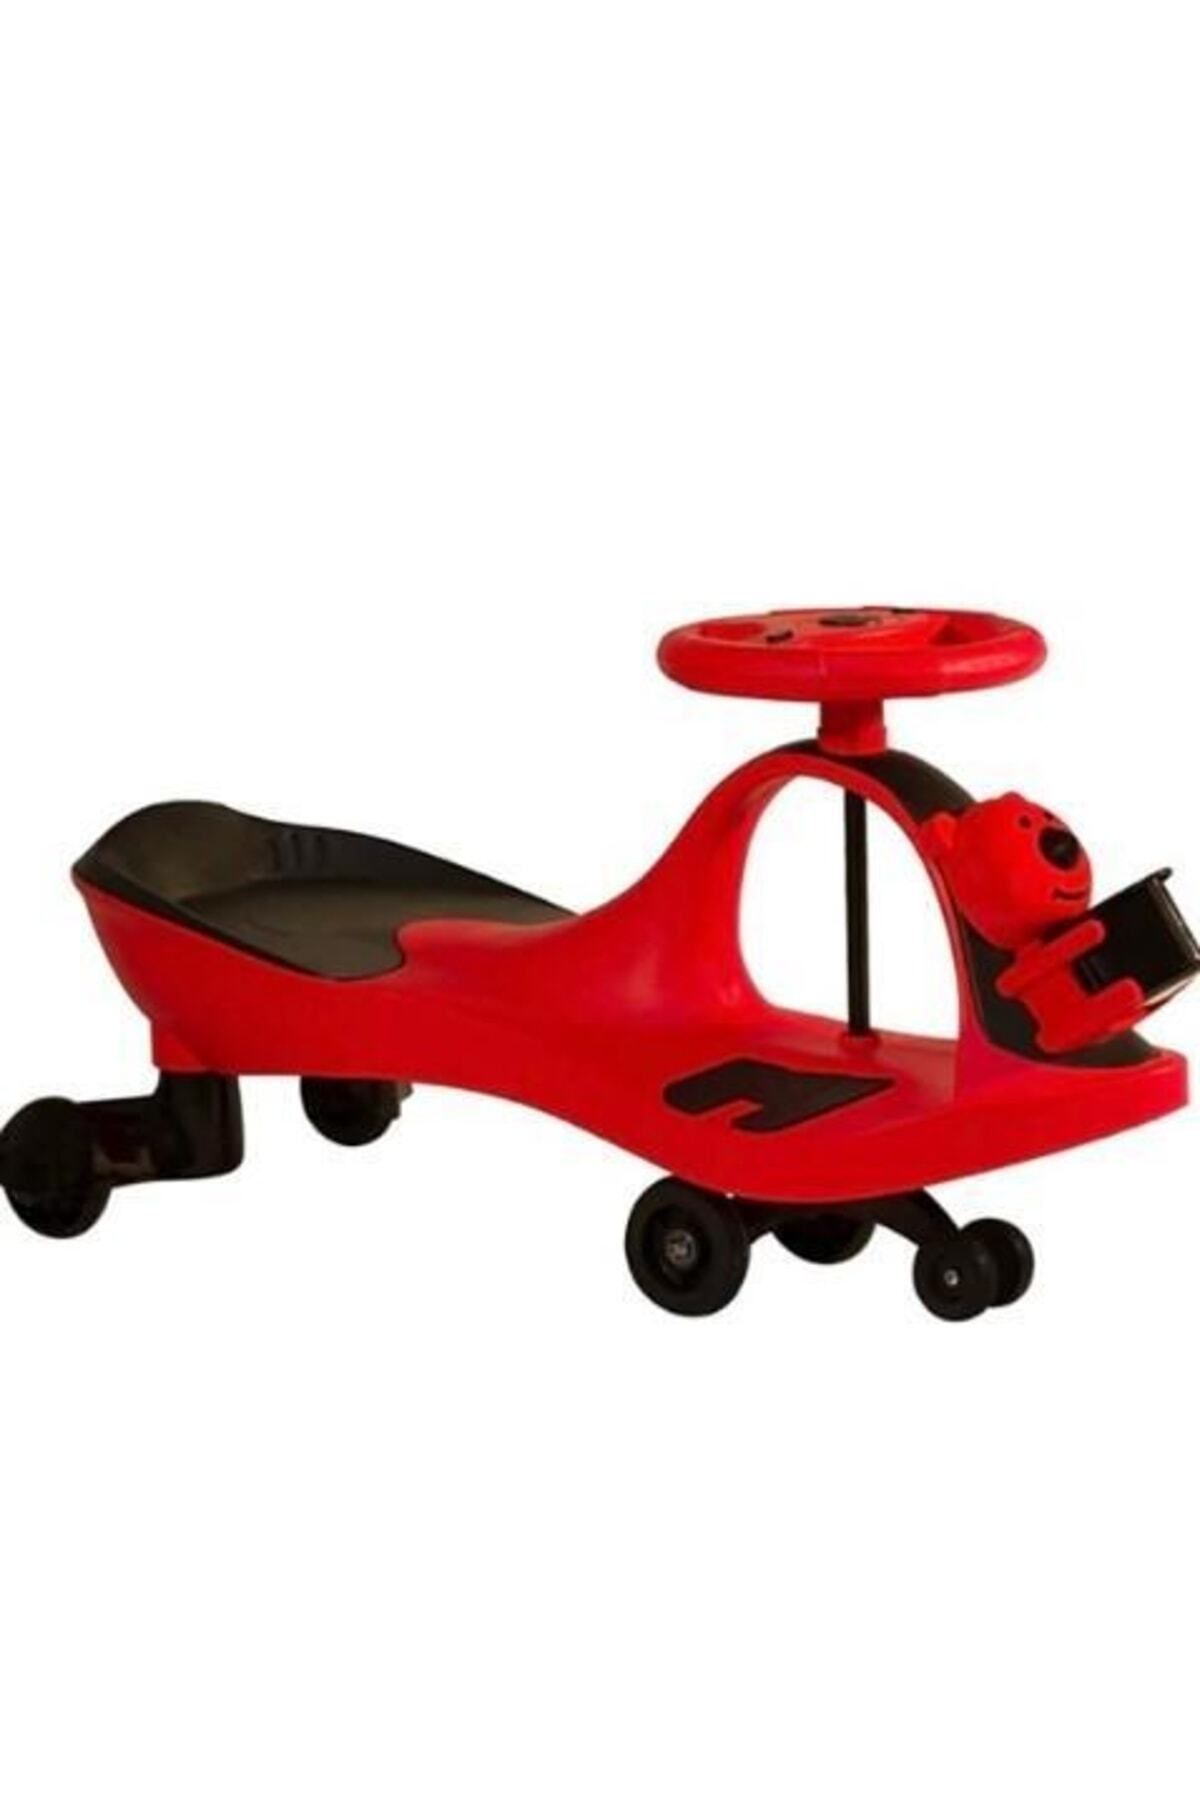 Genel Markalar Karınca Kaykay Plazma Car Swing Car Sihirli Araba